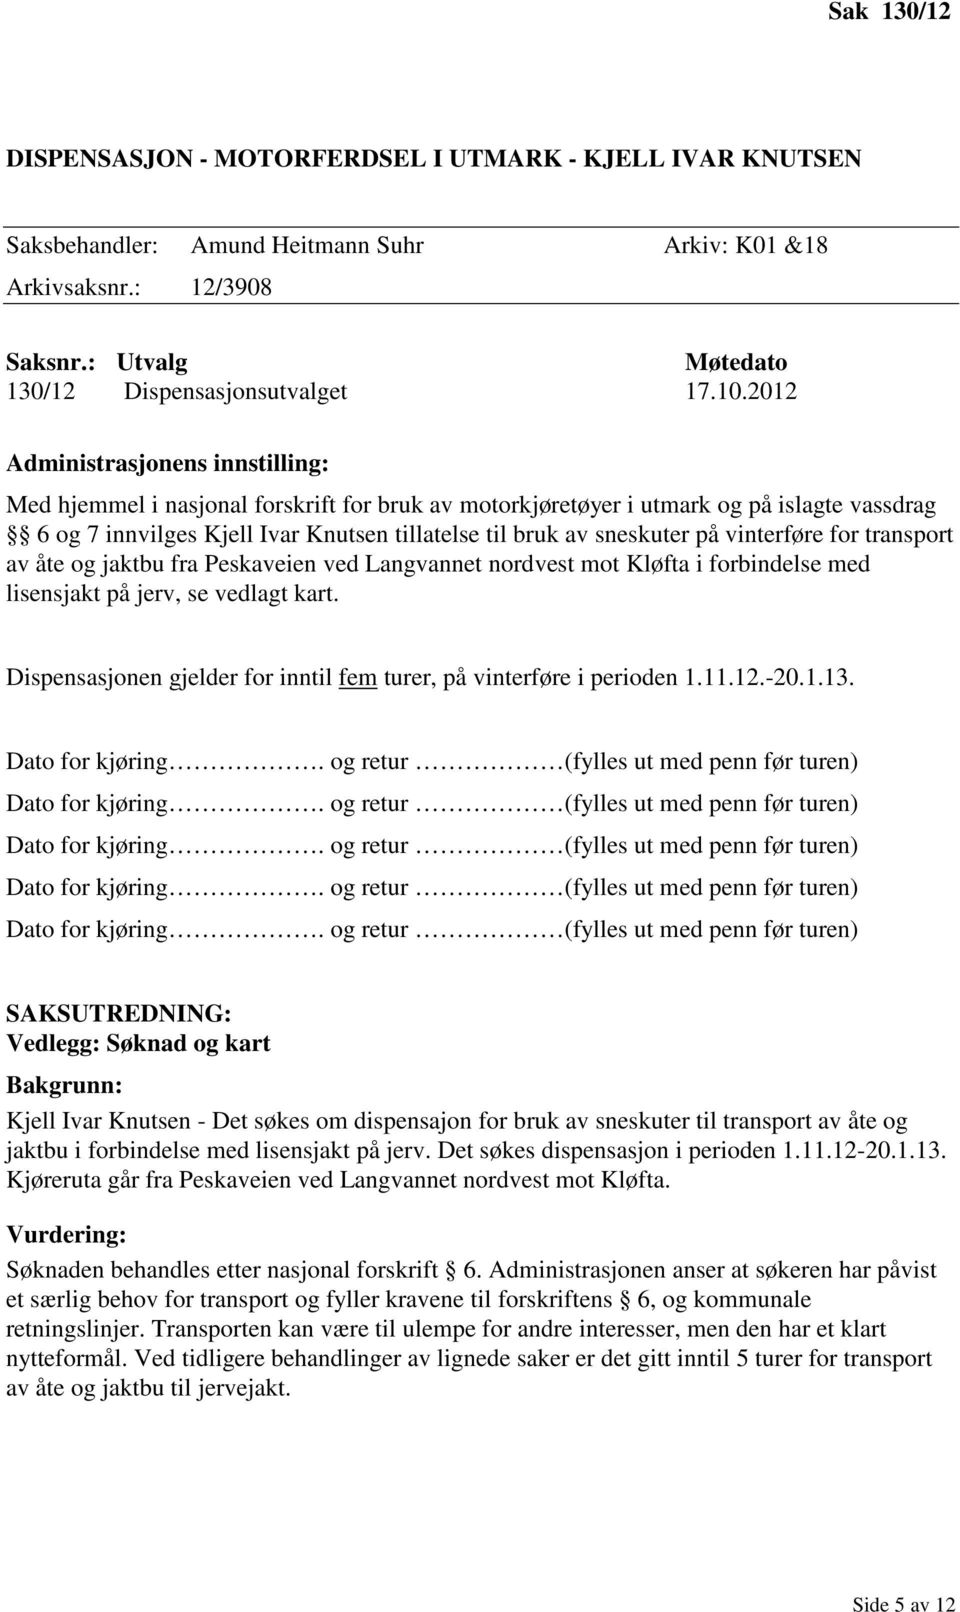 åte og jaktbu fra Peskaveien ved Langvannet nordvest mot Kløfta i forbindelse med lisensjakt på jerv, se vedlagt kart. Dispensasjonen gjelder for inntil fem turer, på vinterføre i perioden 1.11.12.